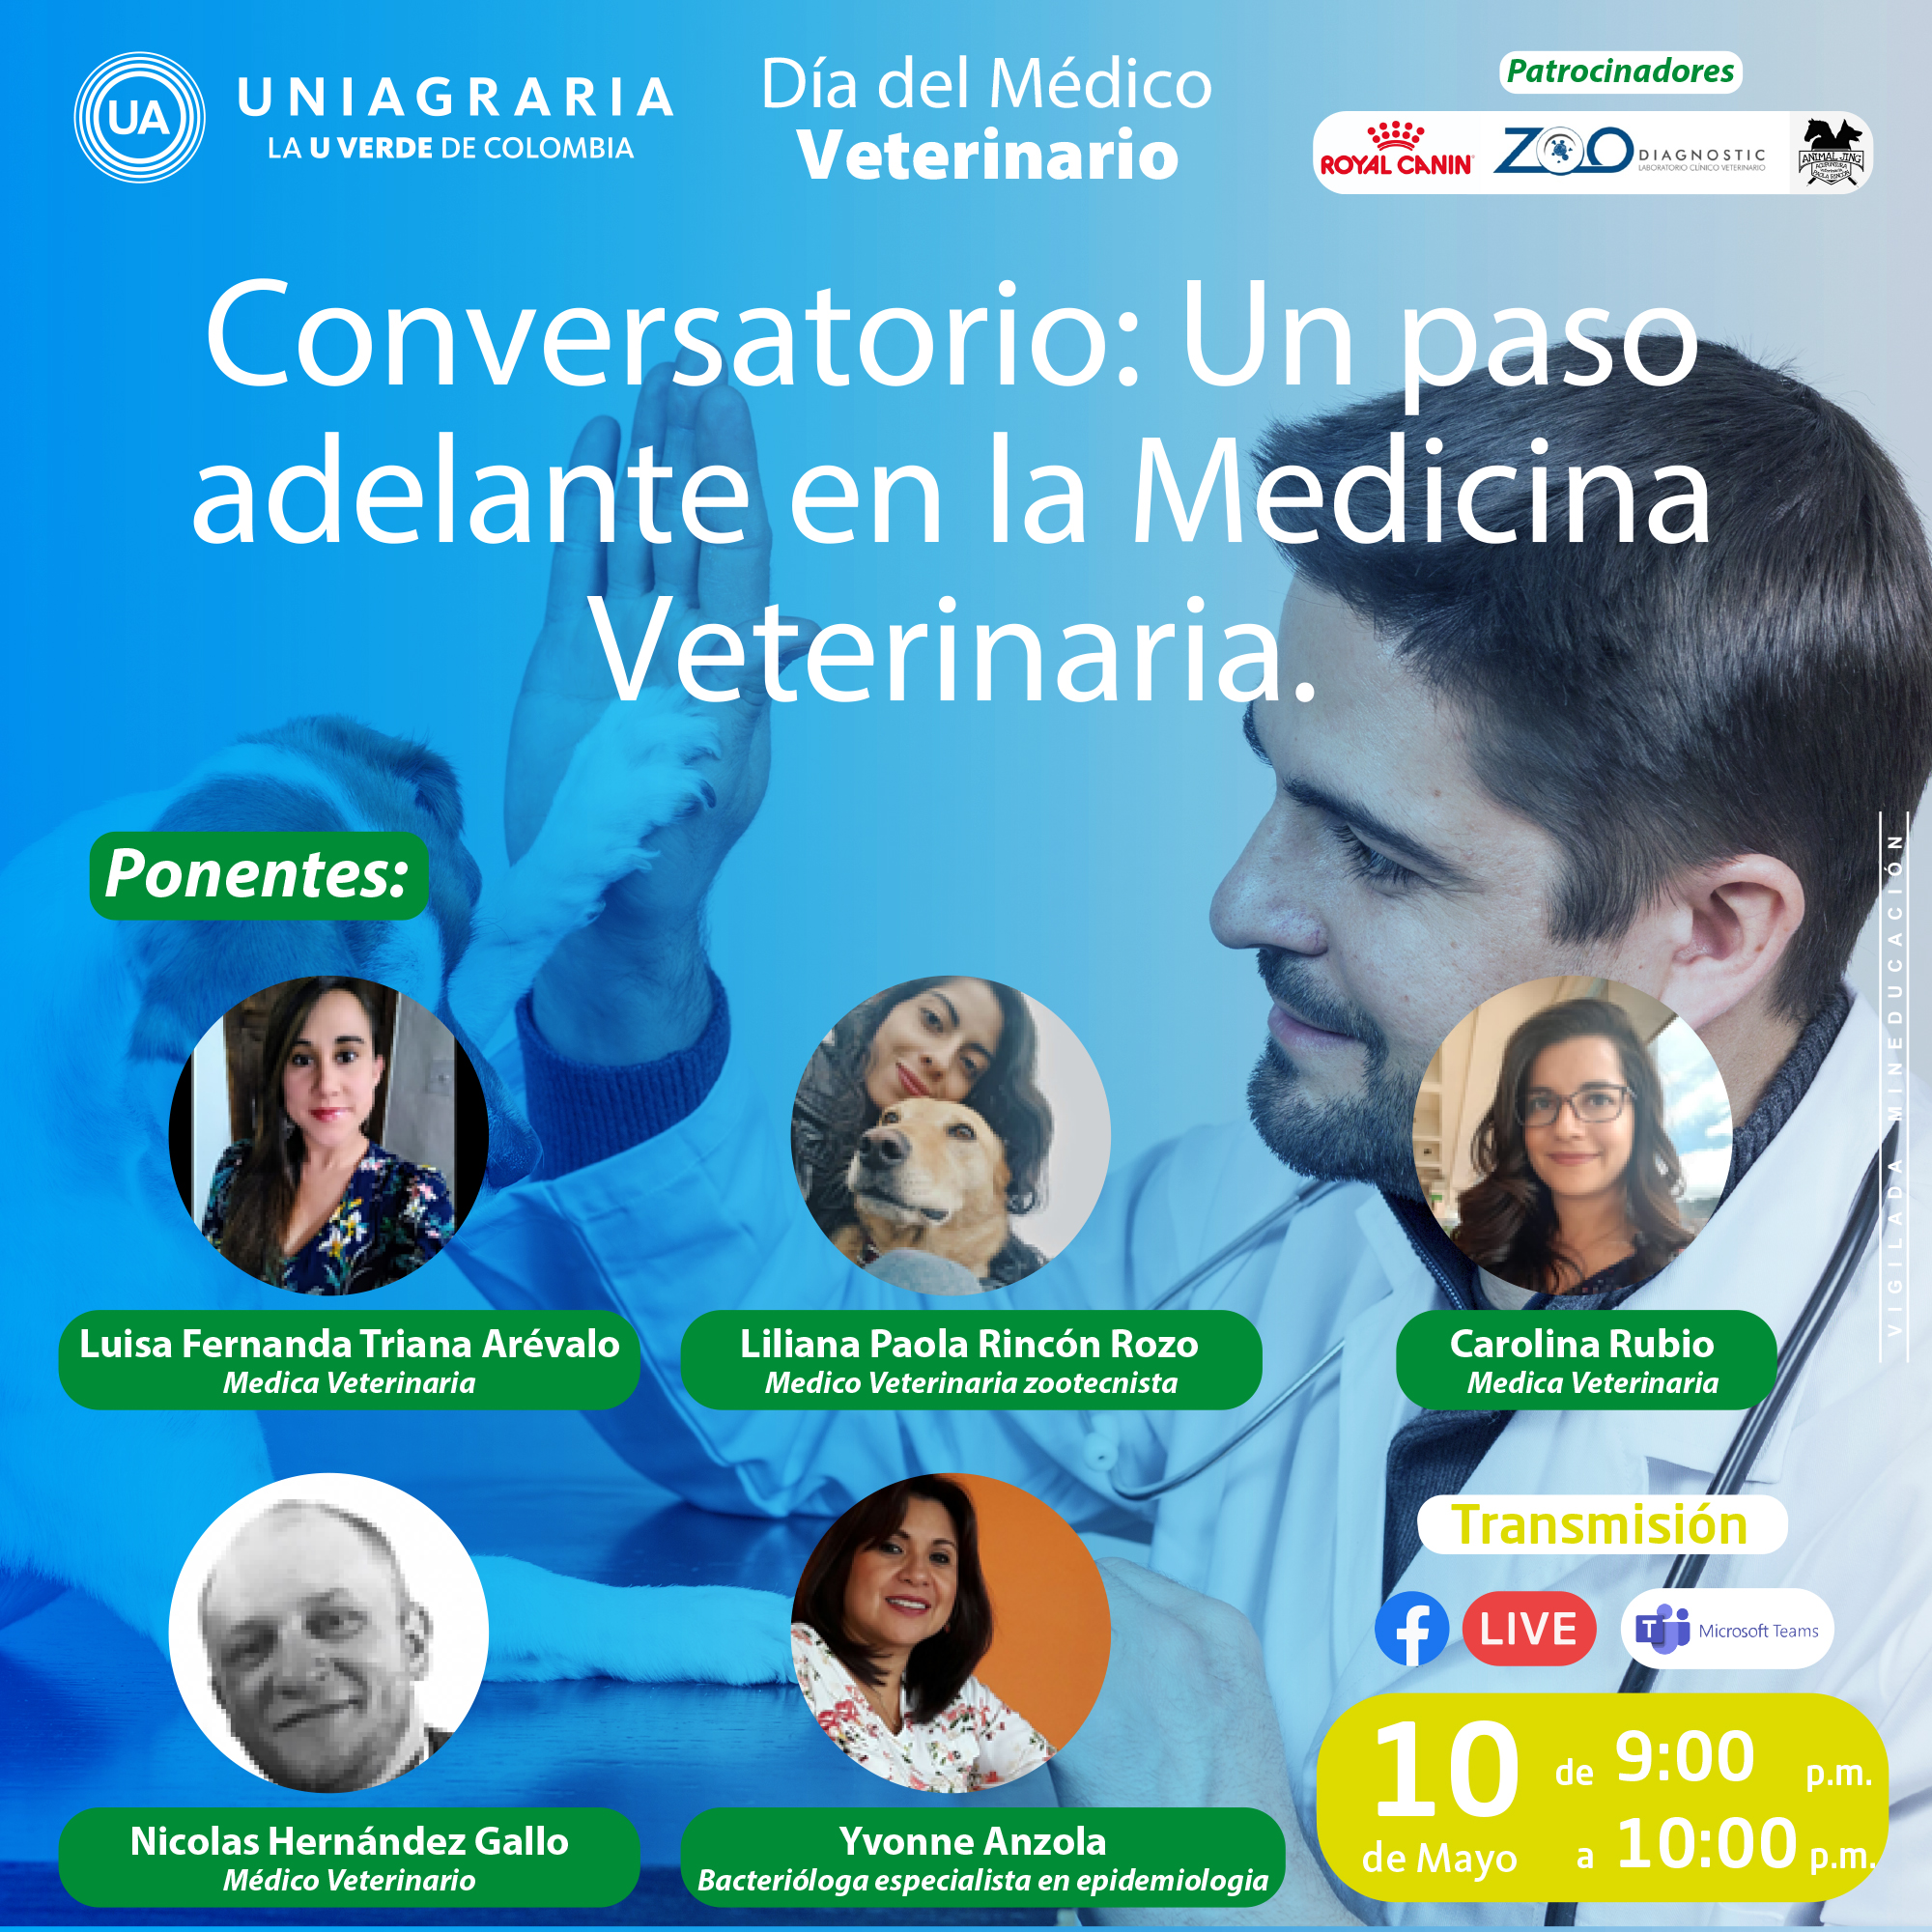 Conversatorio: Un paso adelante en la Medicina Veterinaria